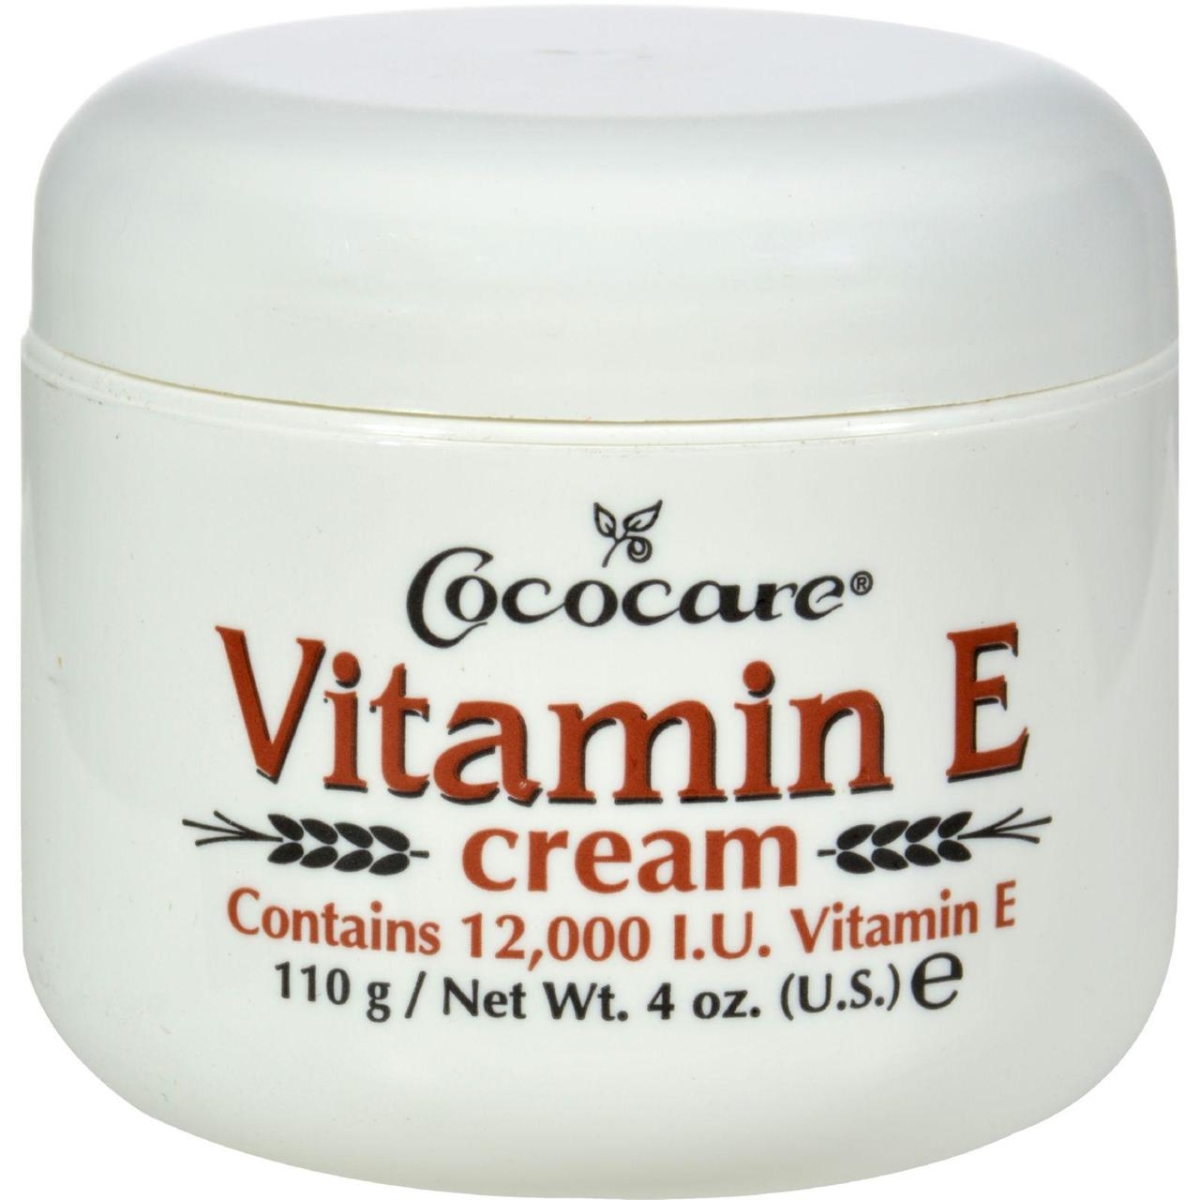 Hg0409011 4 Oz Vitamin E Cream - 12000 Iu